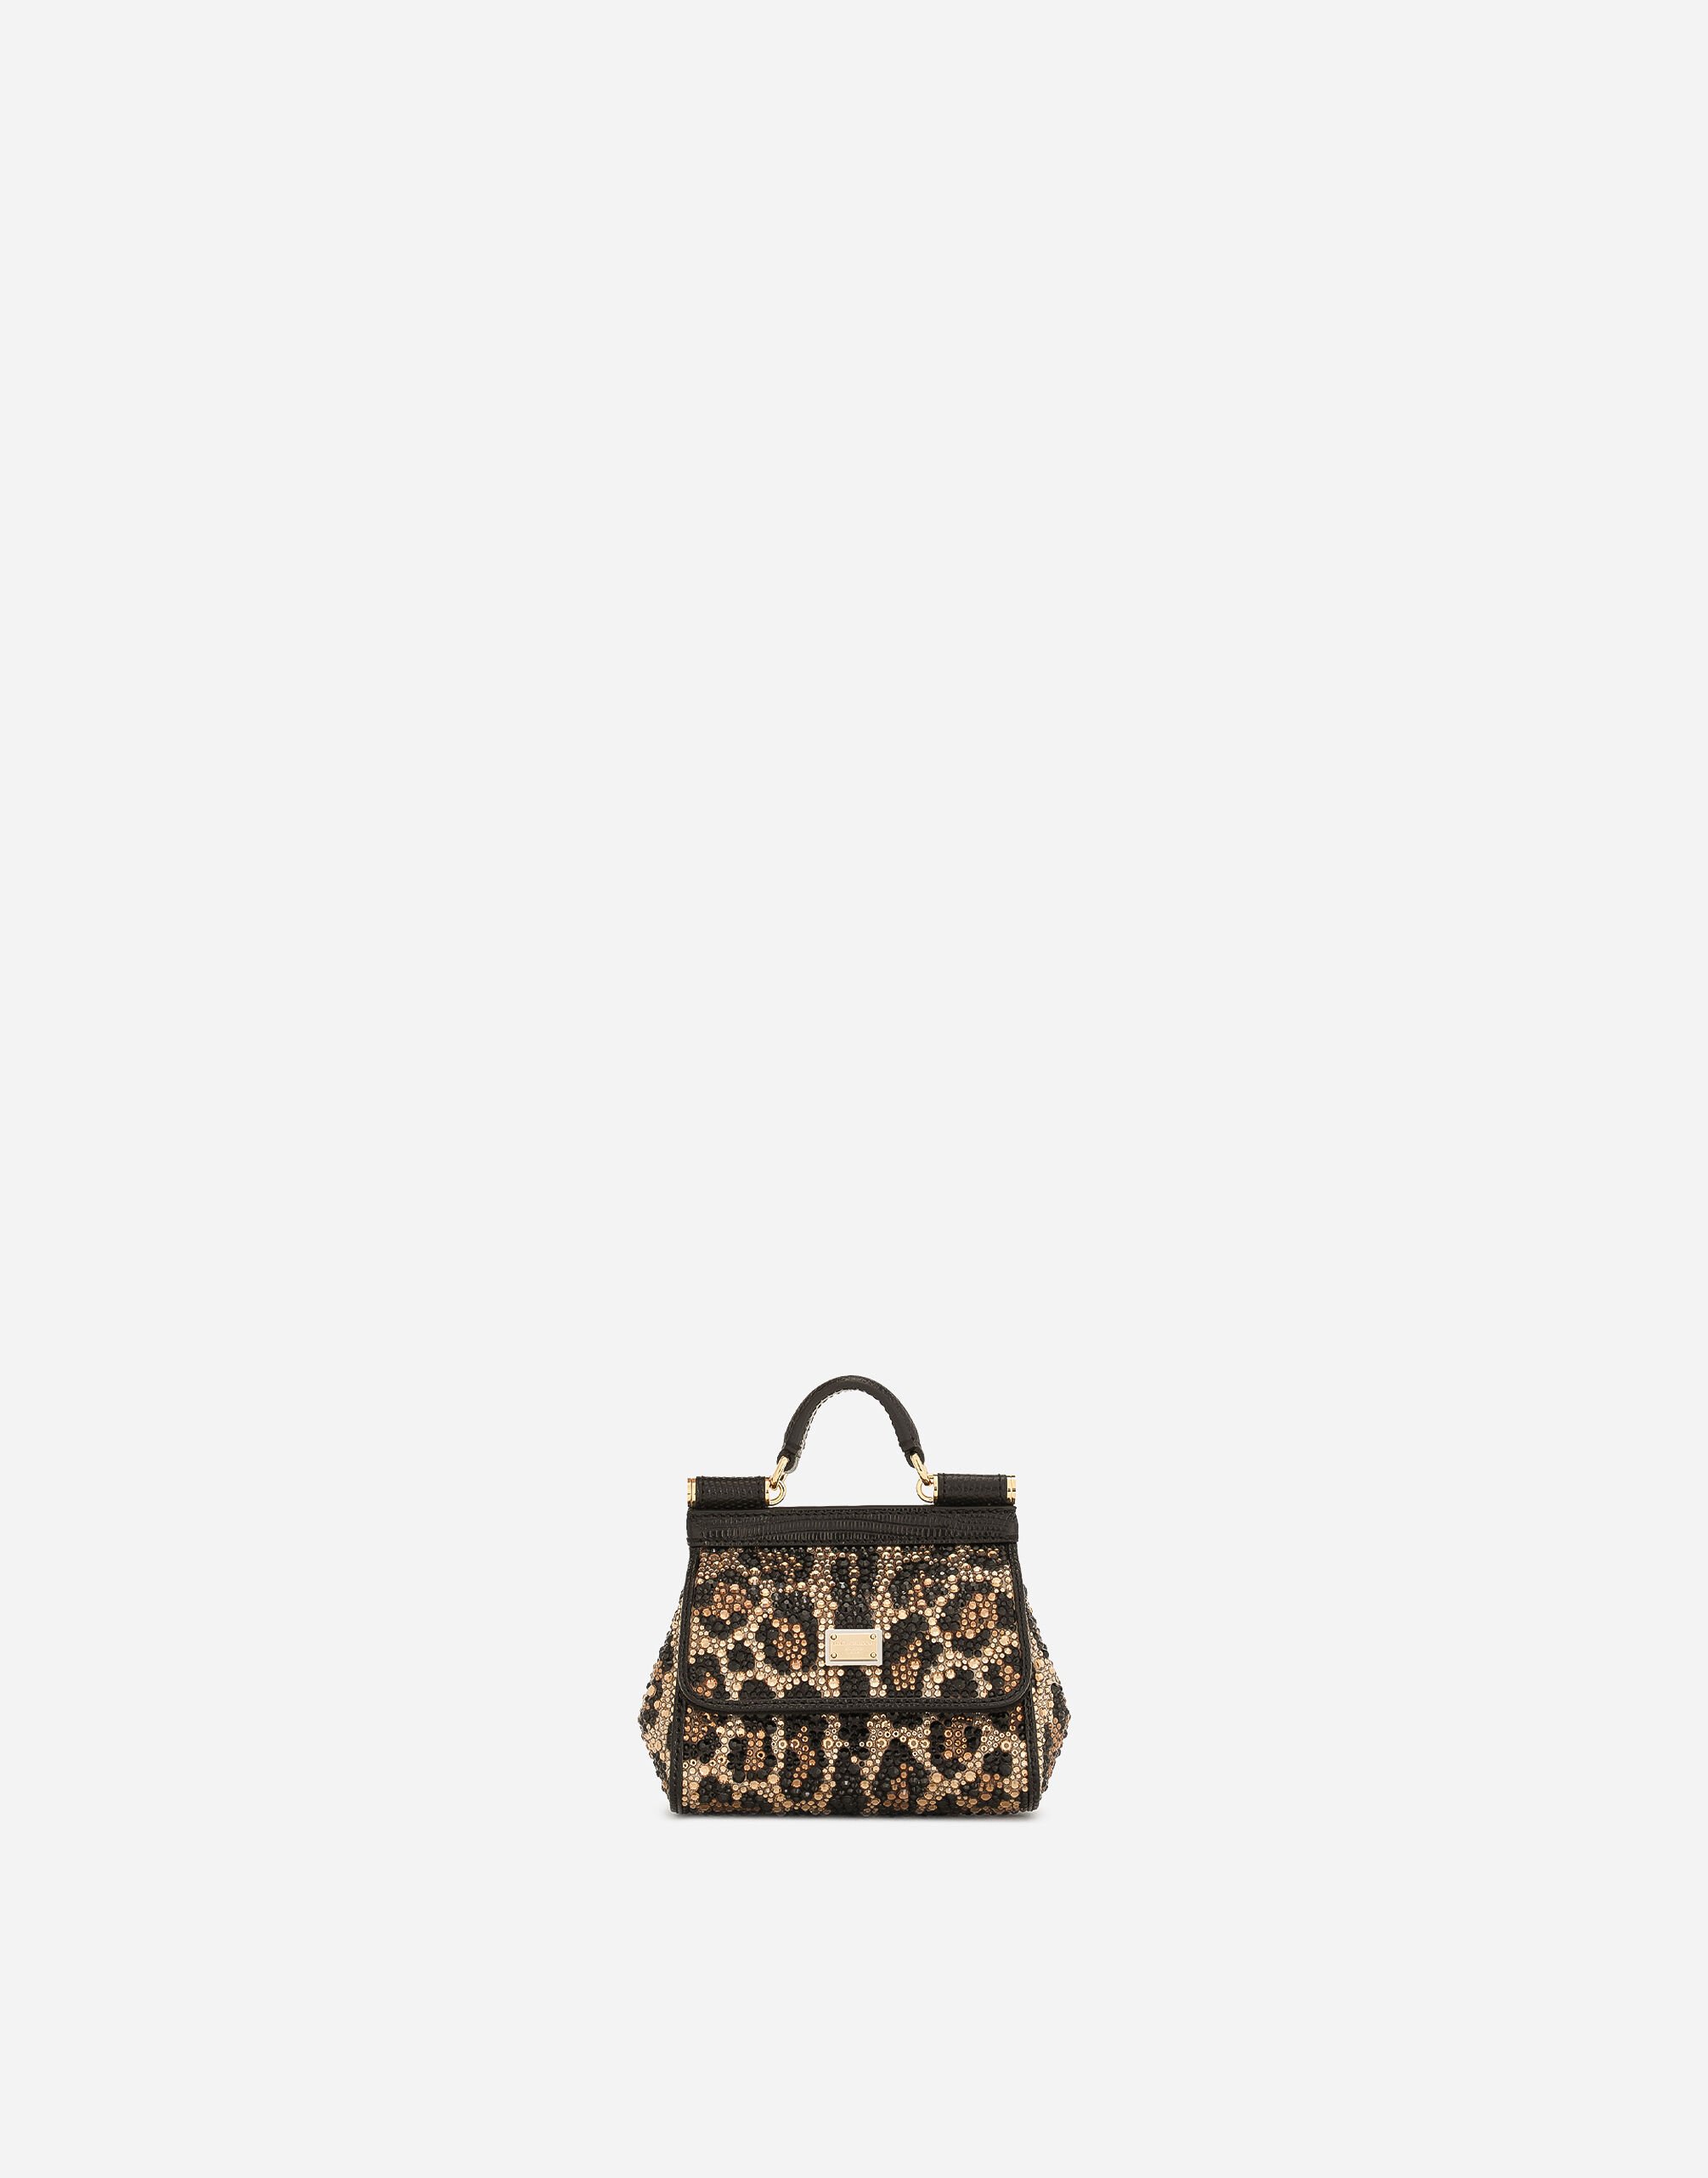 Dolce & Gabbana حقيبة يد سيسيلي صغيرة متعدد الألوان BB2211AW384